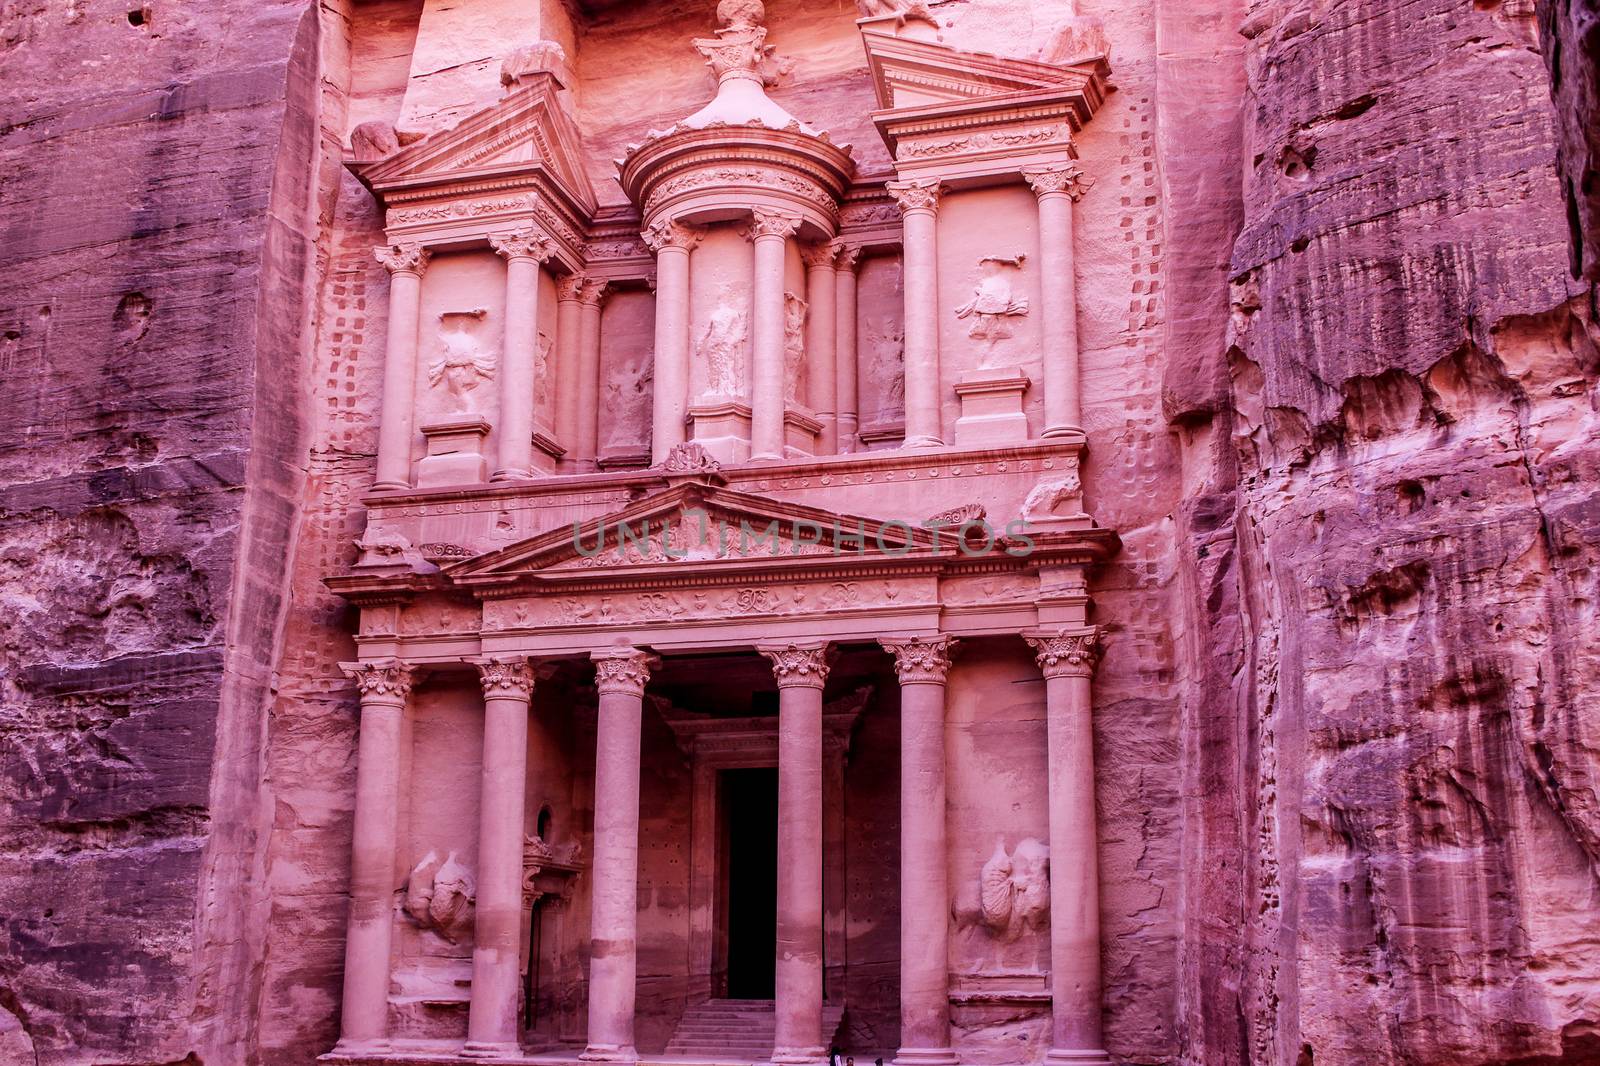 Al Khazneh or The Treasury at Petra, Jordan by bloodua